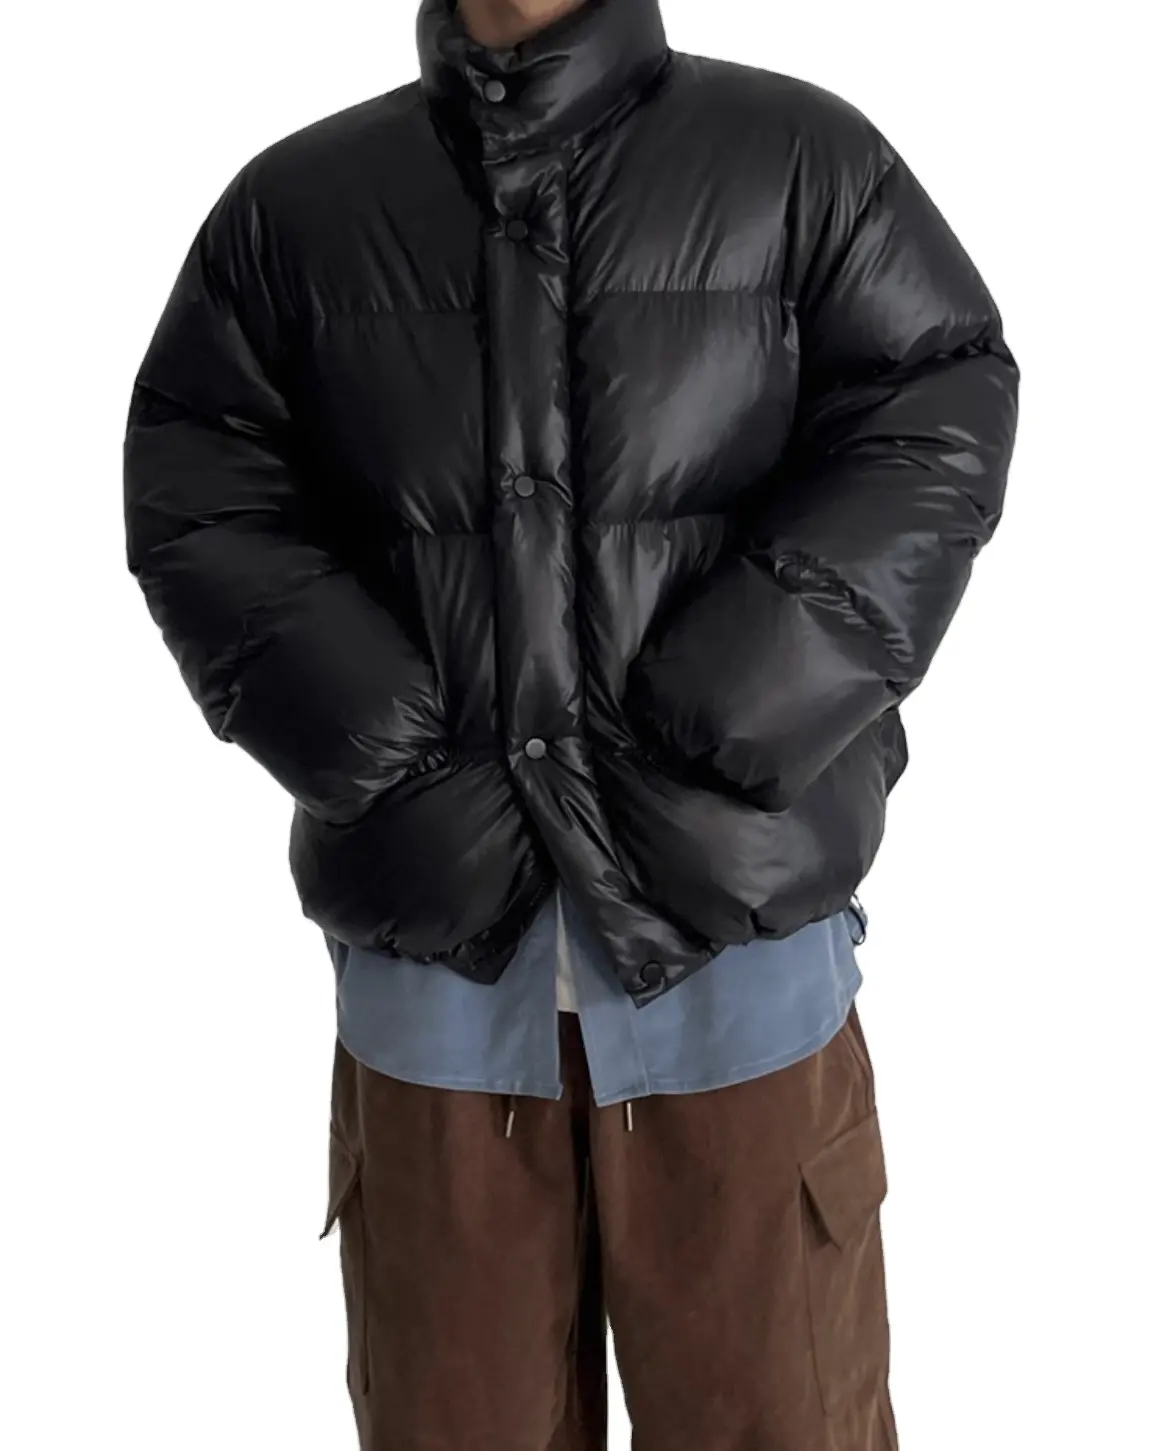 OEM उच्च गुणवत्ता वाले विंडप्रूफ और वाटरप्रूफ कस्टम पफ़र जैकेट पुरुषों के लिए विंटर प्लस साइज़ गर्म जैकेट कॉटन कोट हल्का है OEM